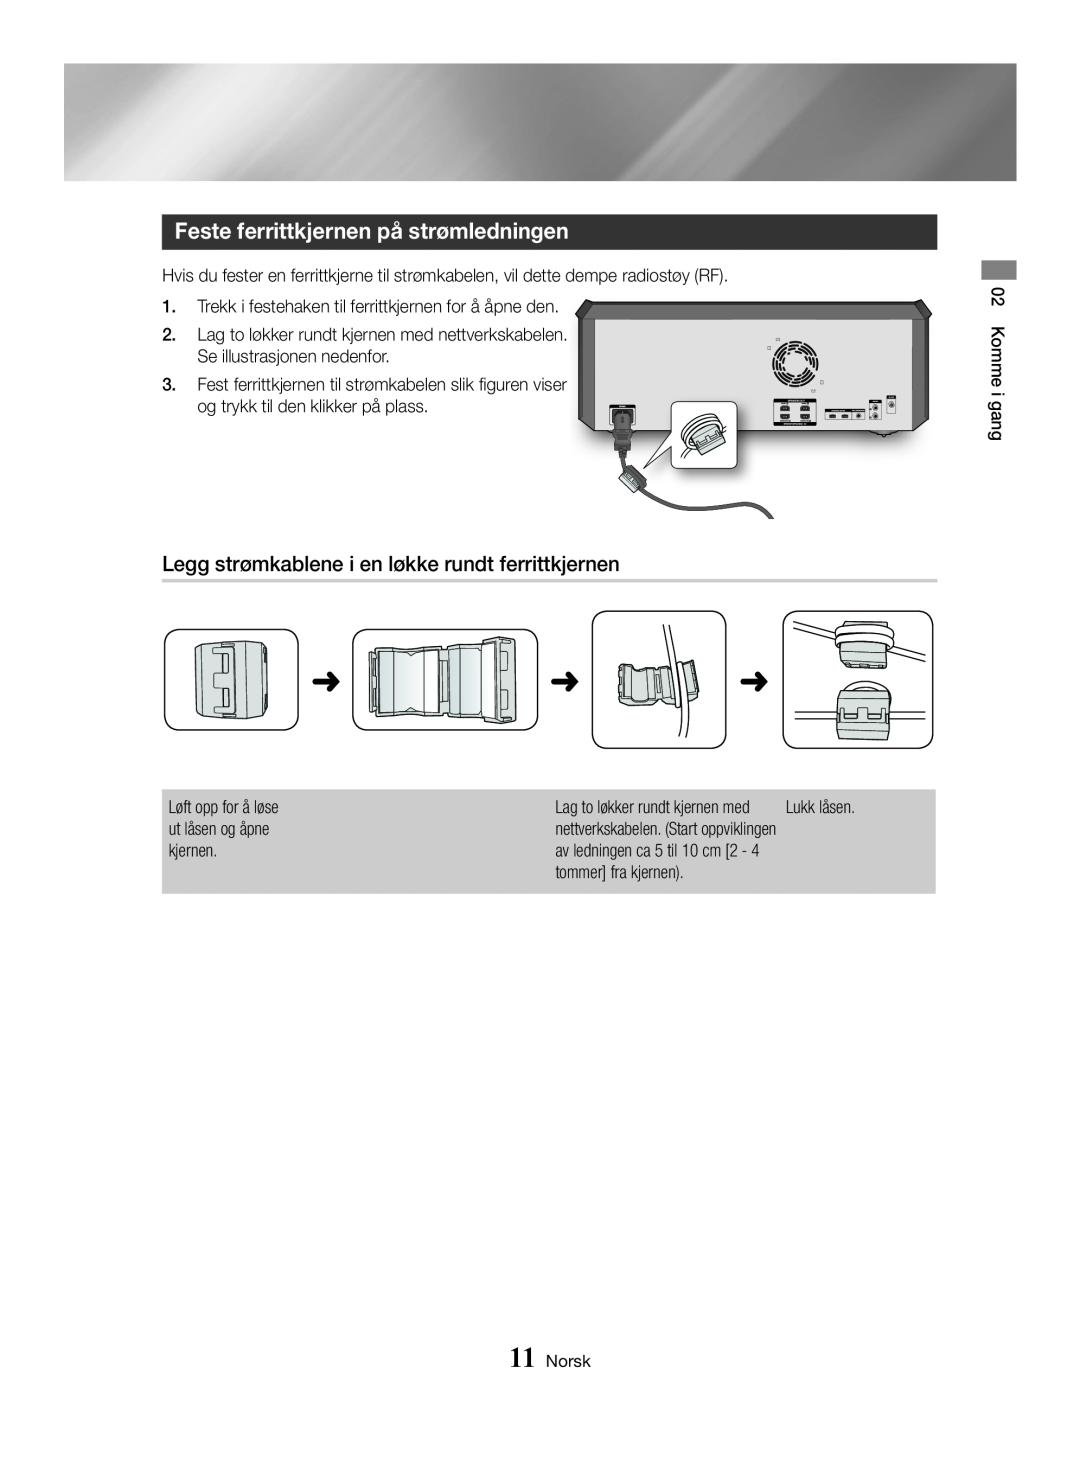 Samsung MX-HS8000/ZF manual Feste ferrittkjernen på strømledningen, Legg strømkablene i en løkke rundt ferrittkjernen 